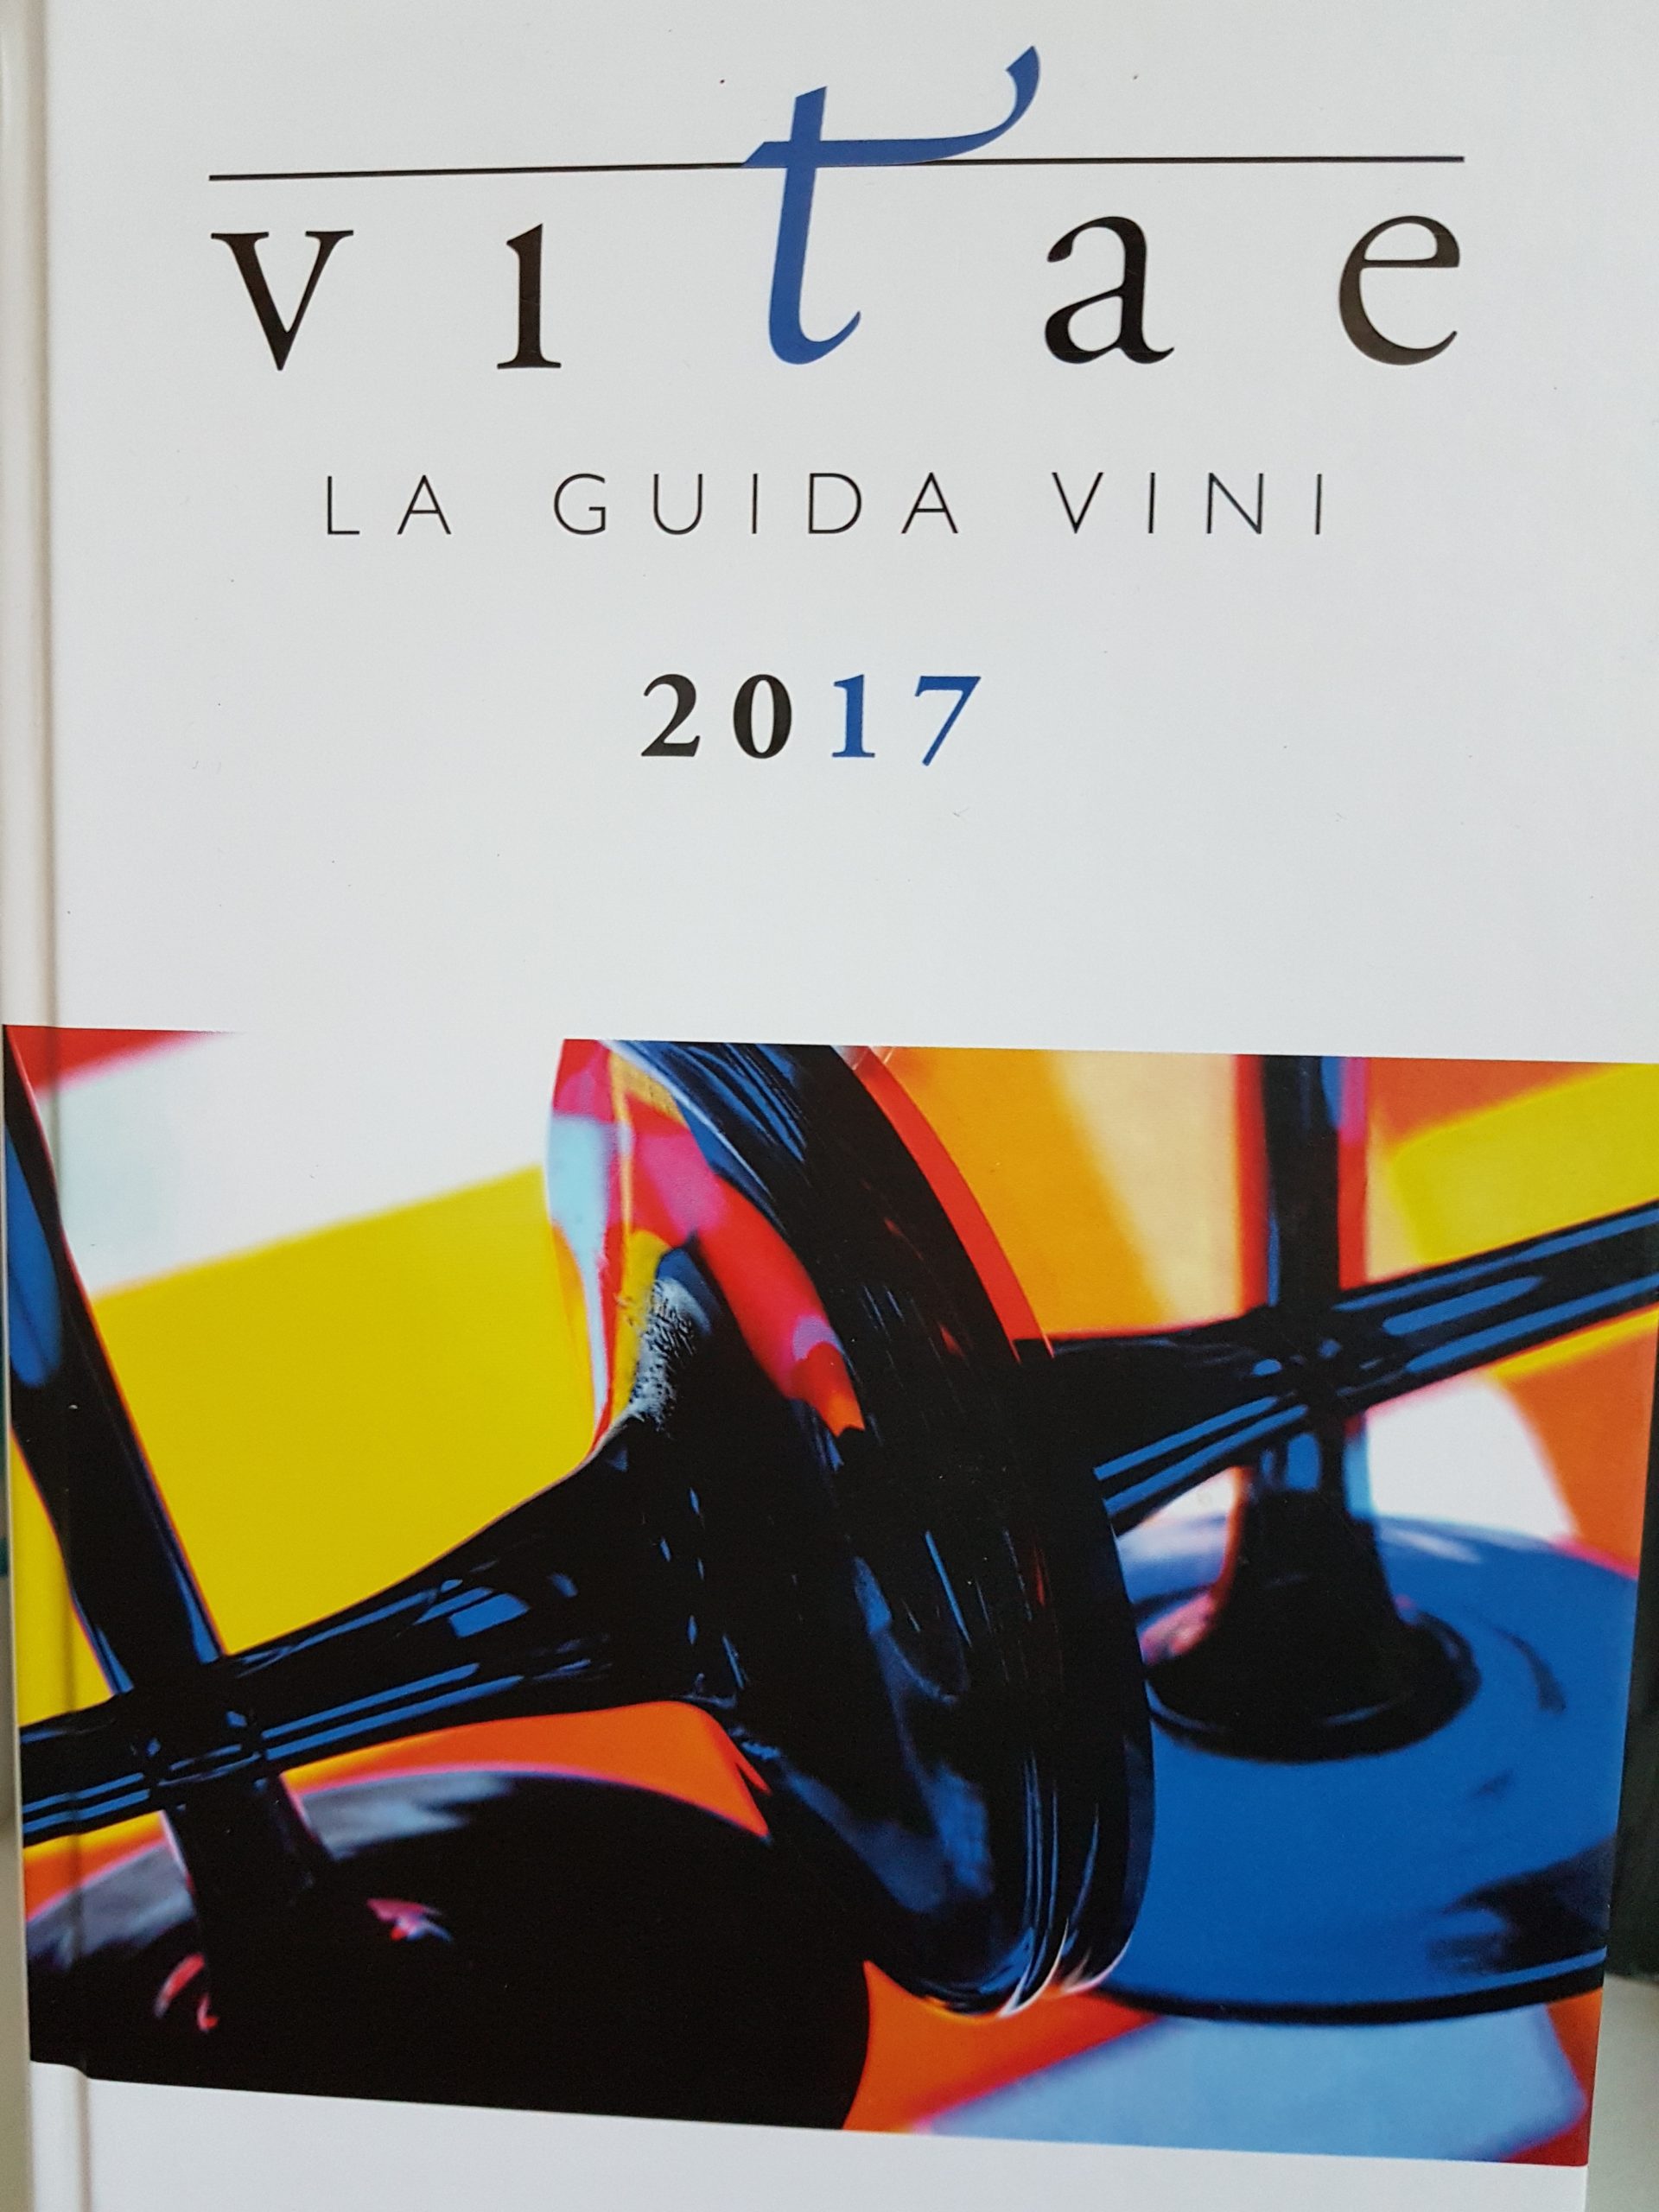 Guida Vini 2017 - Vitae Recensione per i Vini Toscani di Cacciagrande